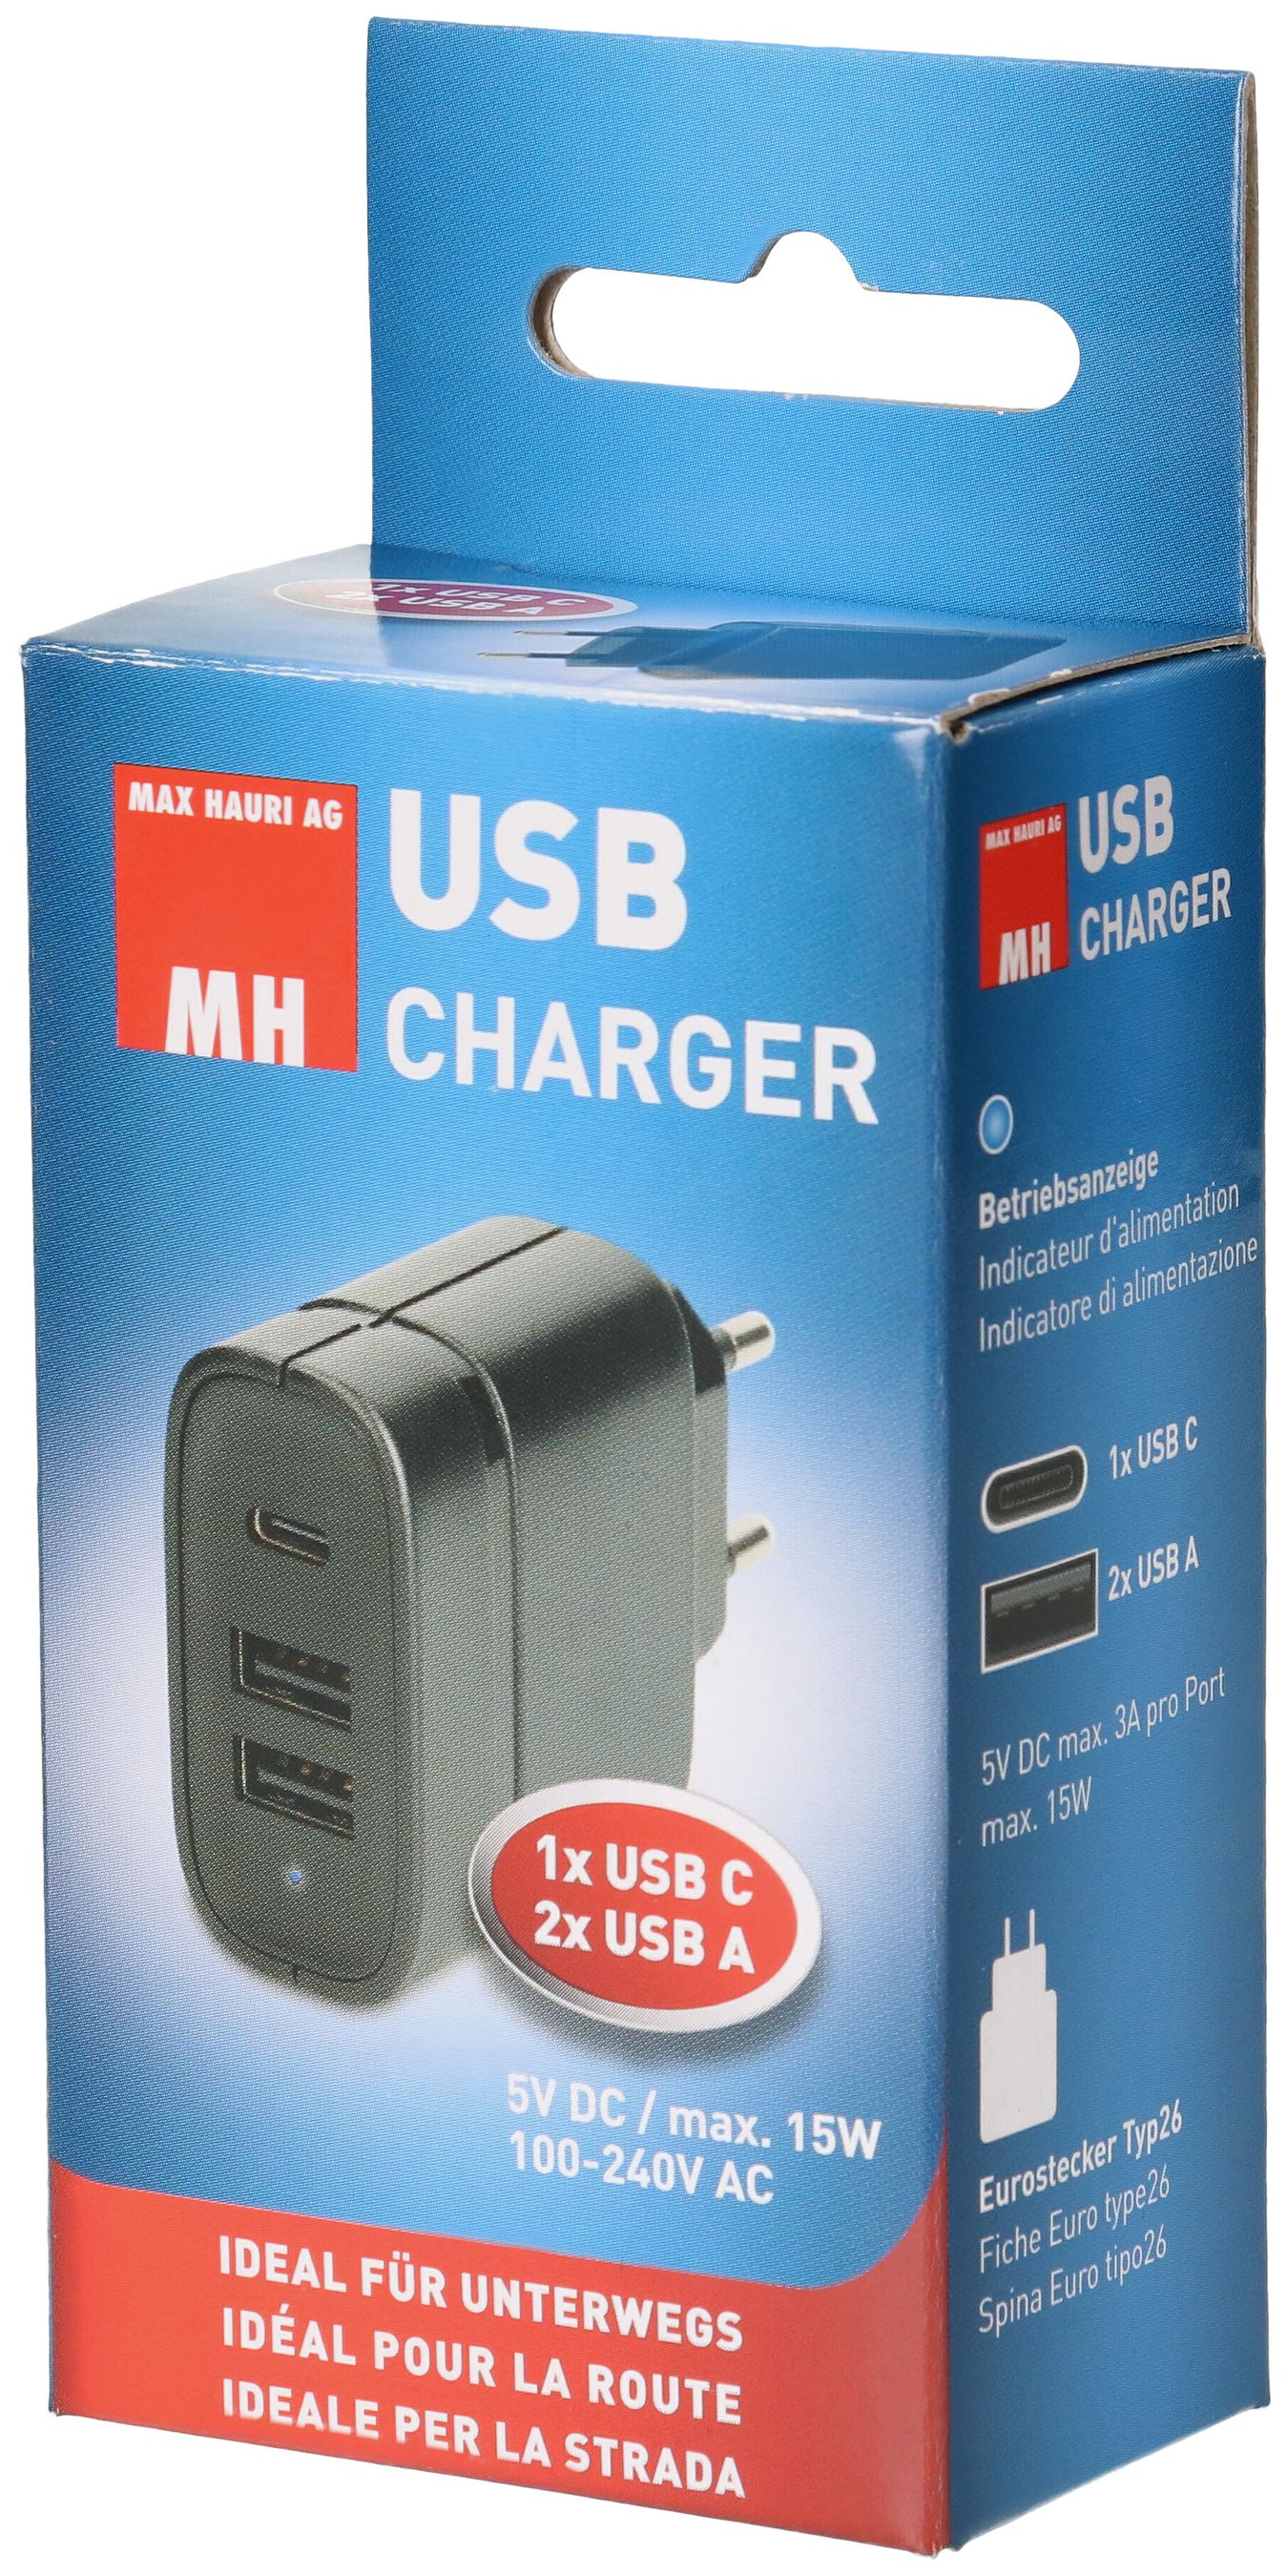 USB Charger 2x USB A und 1x USB C Total 15W